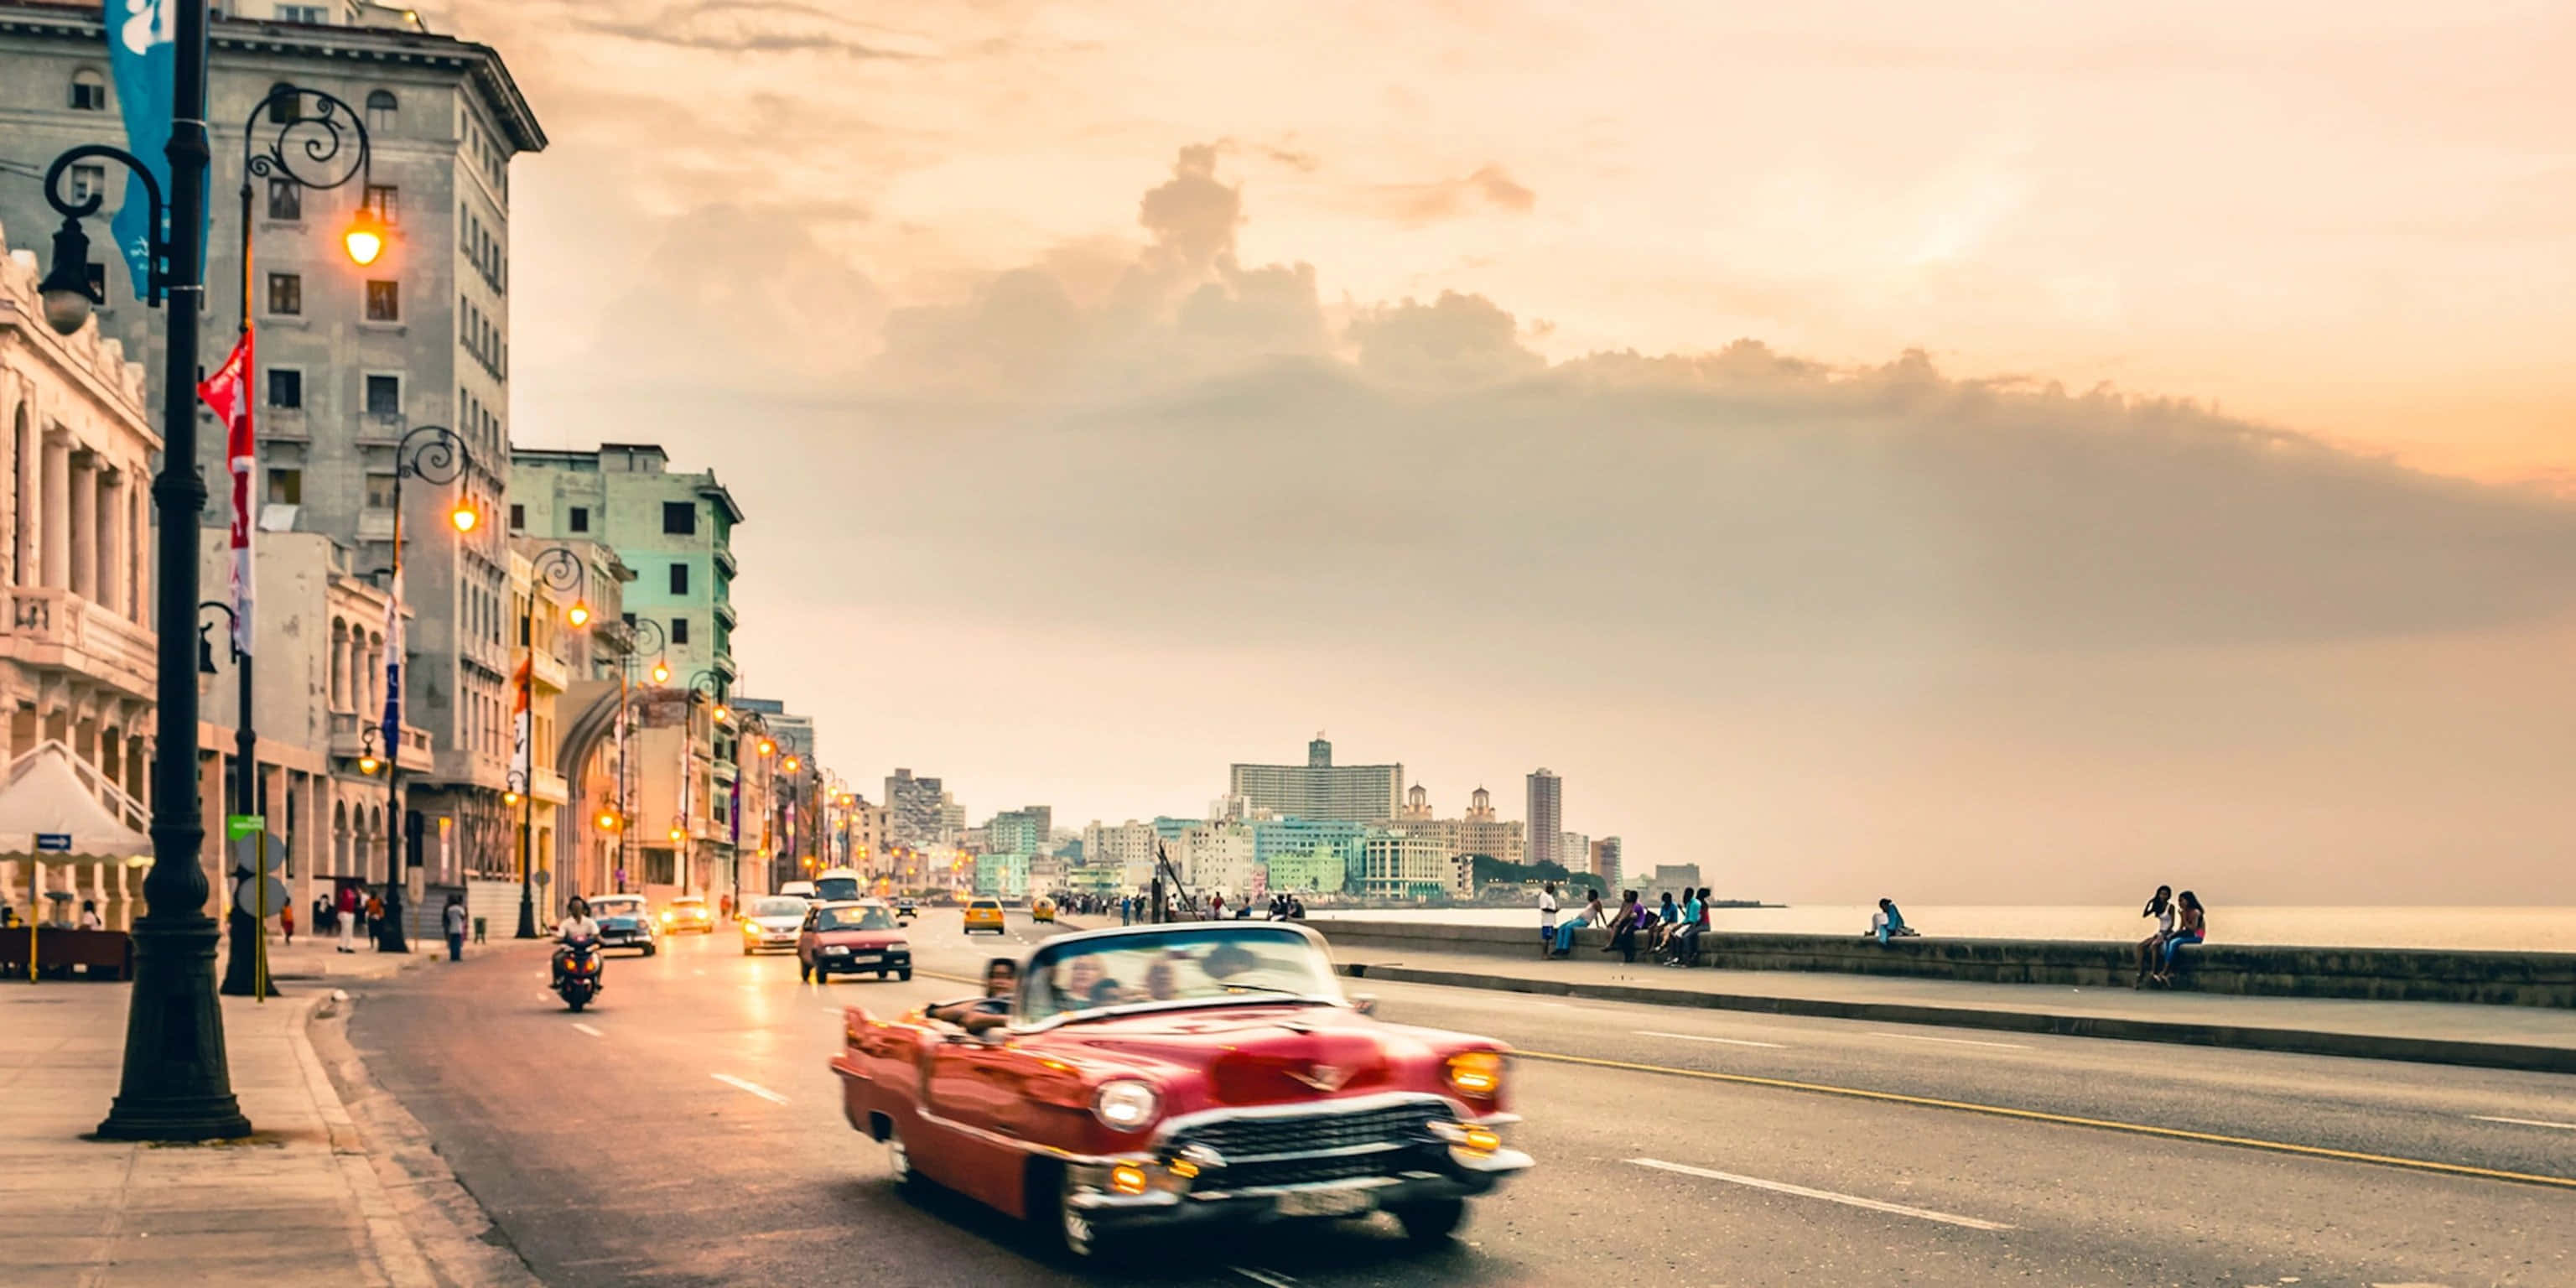 Explore Cuba’s rich culture